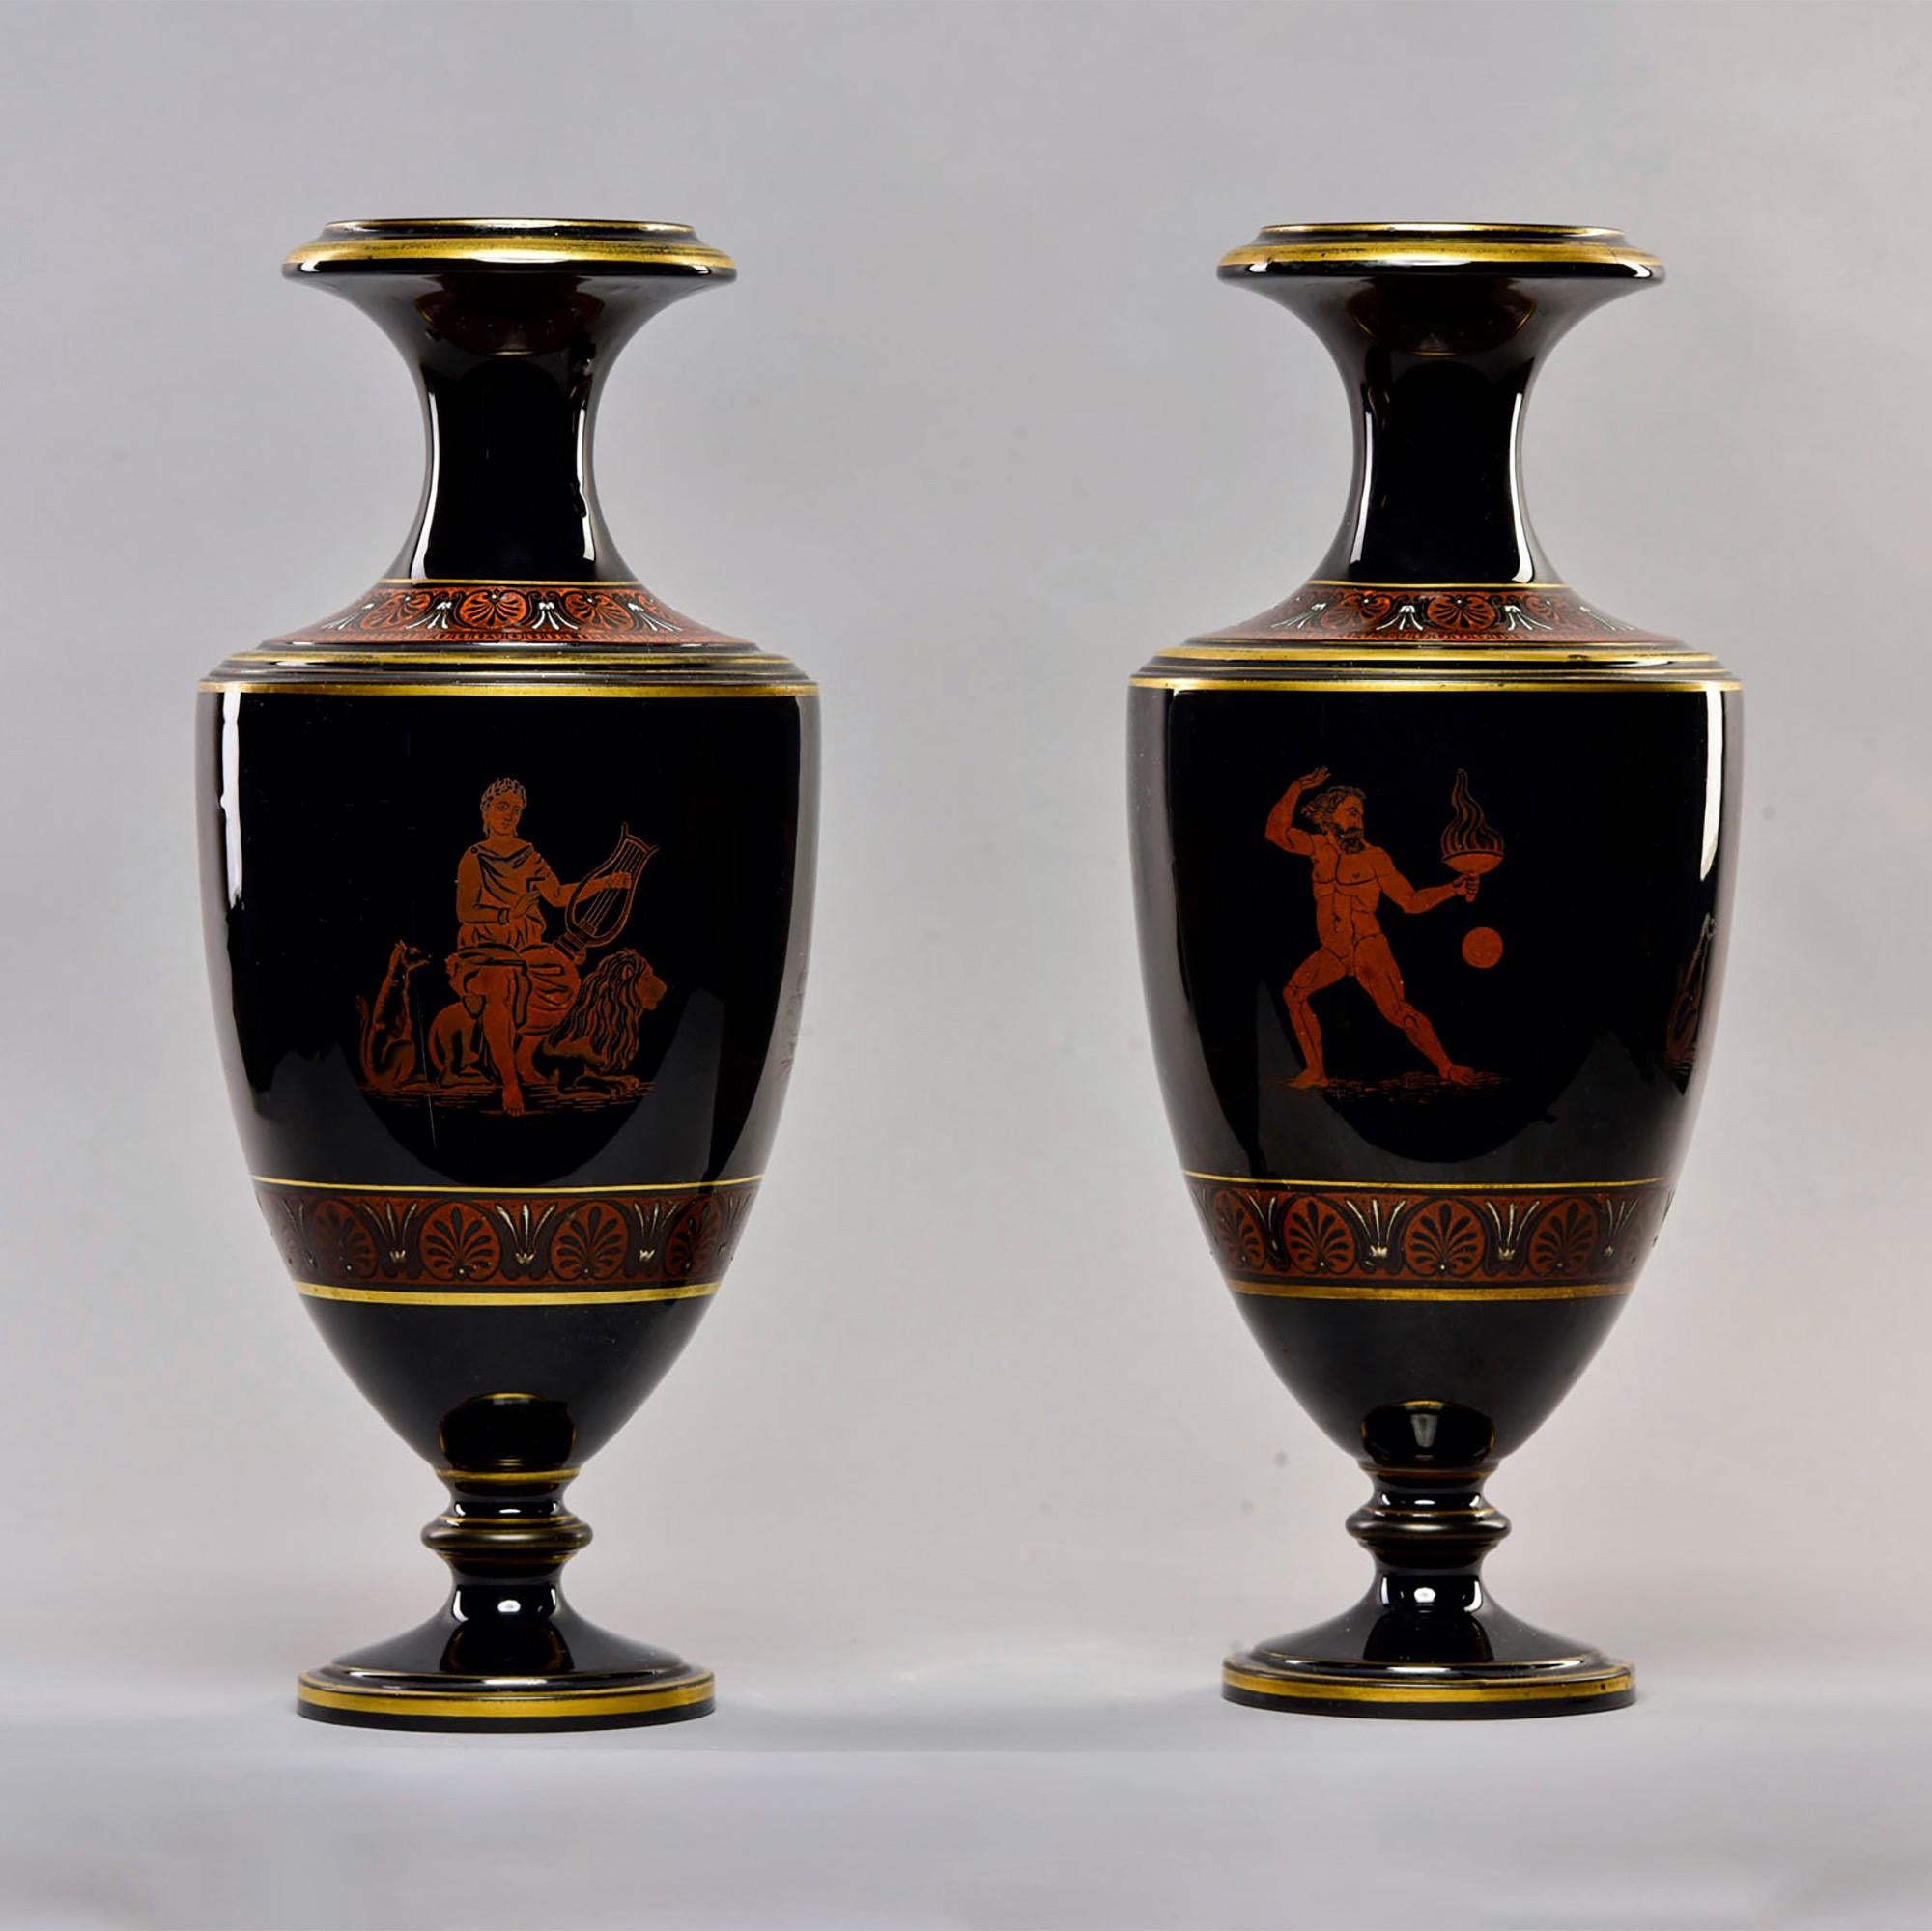 Dieses Paar hoher schwarzer Porzellanvasen wurde in England gefunden und stammt etwa aus den 1880er Jahren. Verziert mit Gold und klassischen griechischen oder römischen Figuren. Unbekannter Hersteller. Sehr guter antiker Zustand. Verkauft und